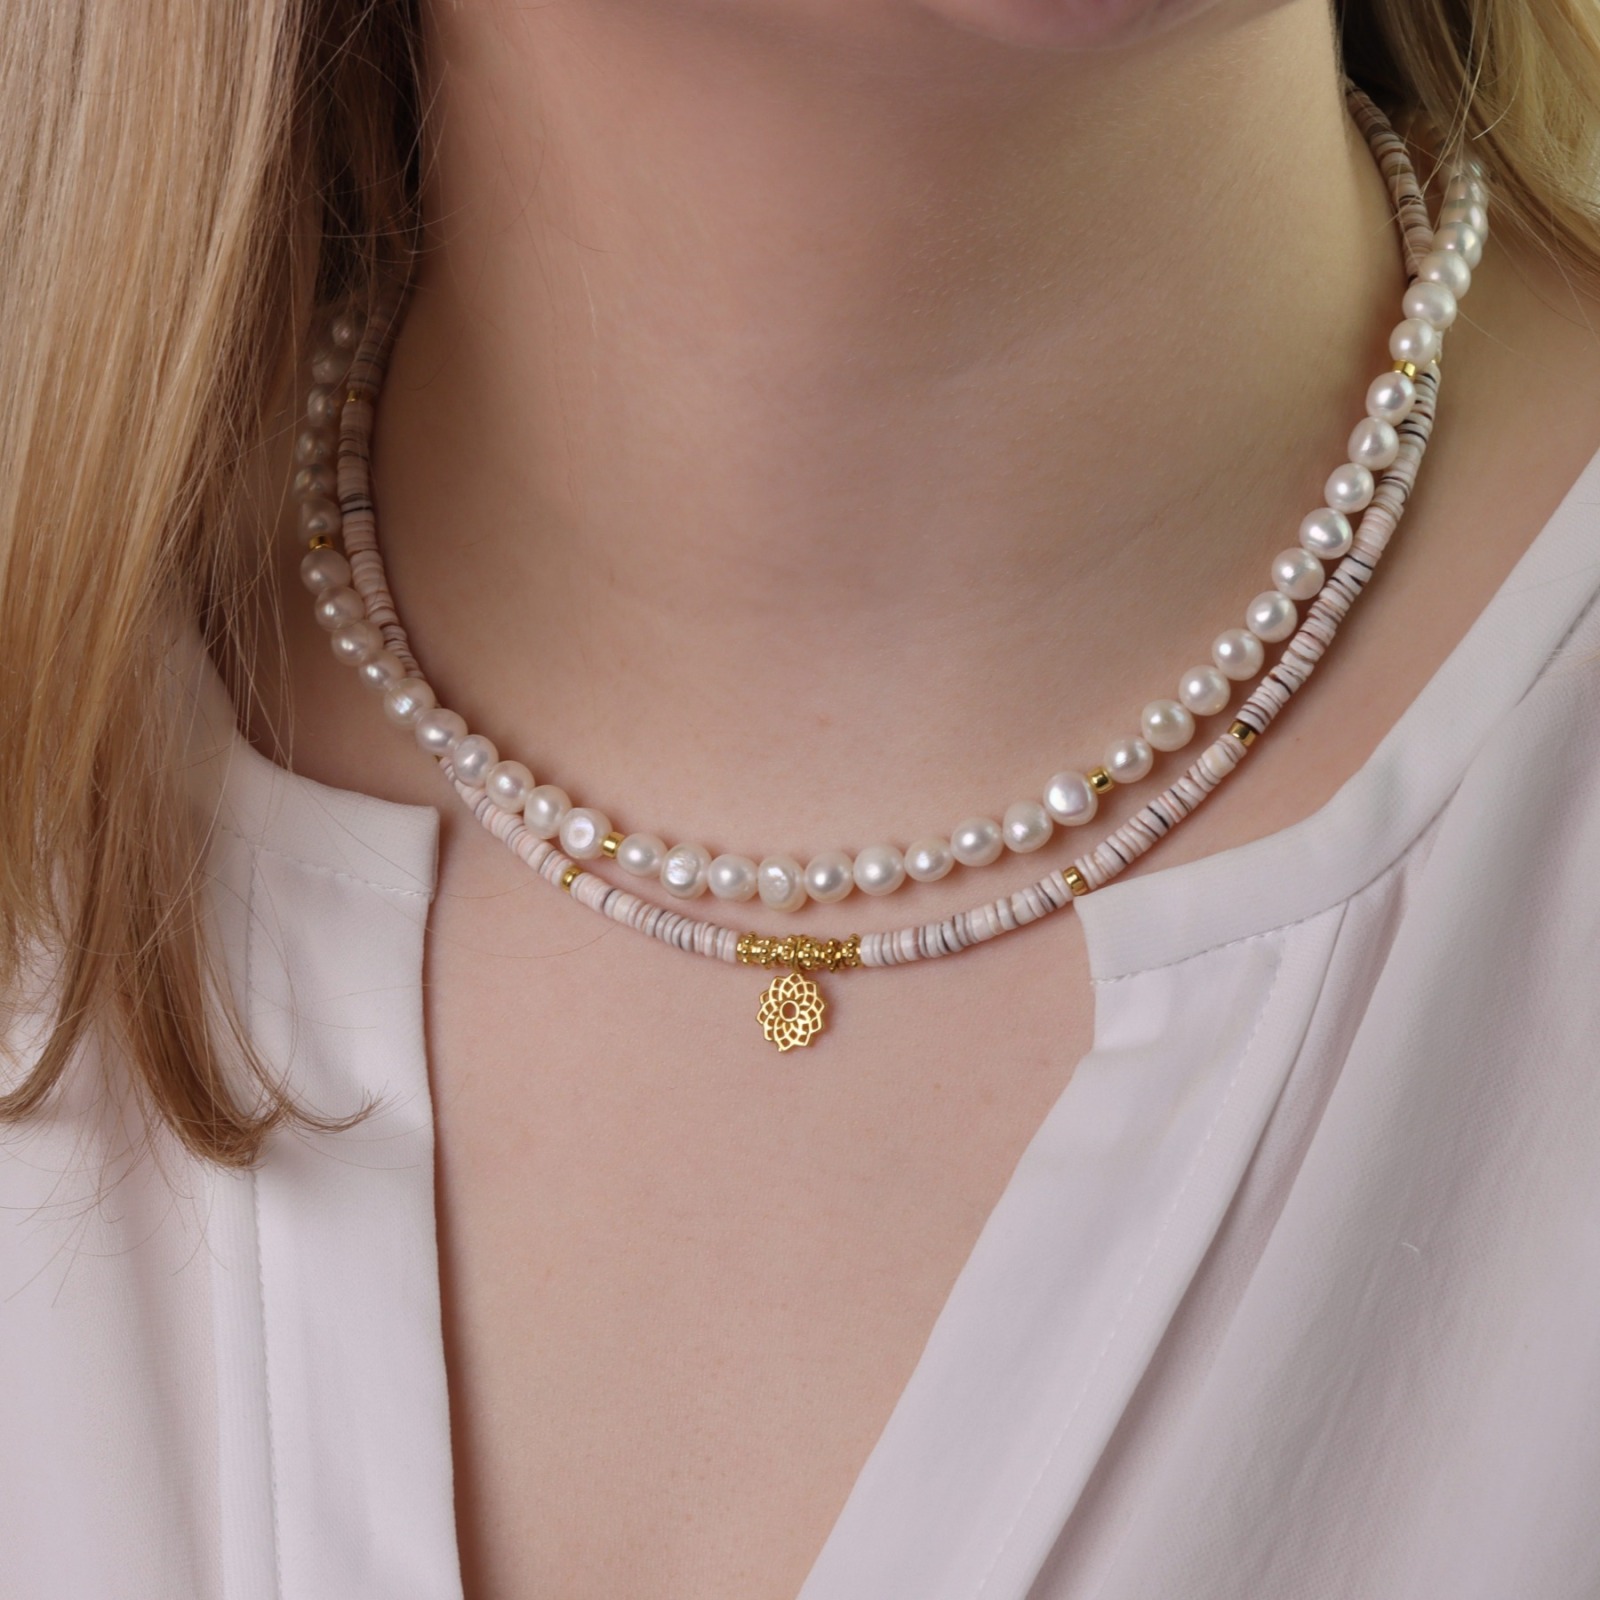 Schmuck Ketten Muschelketten Perlenkette echte perlen 